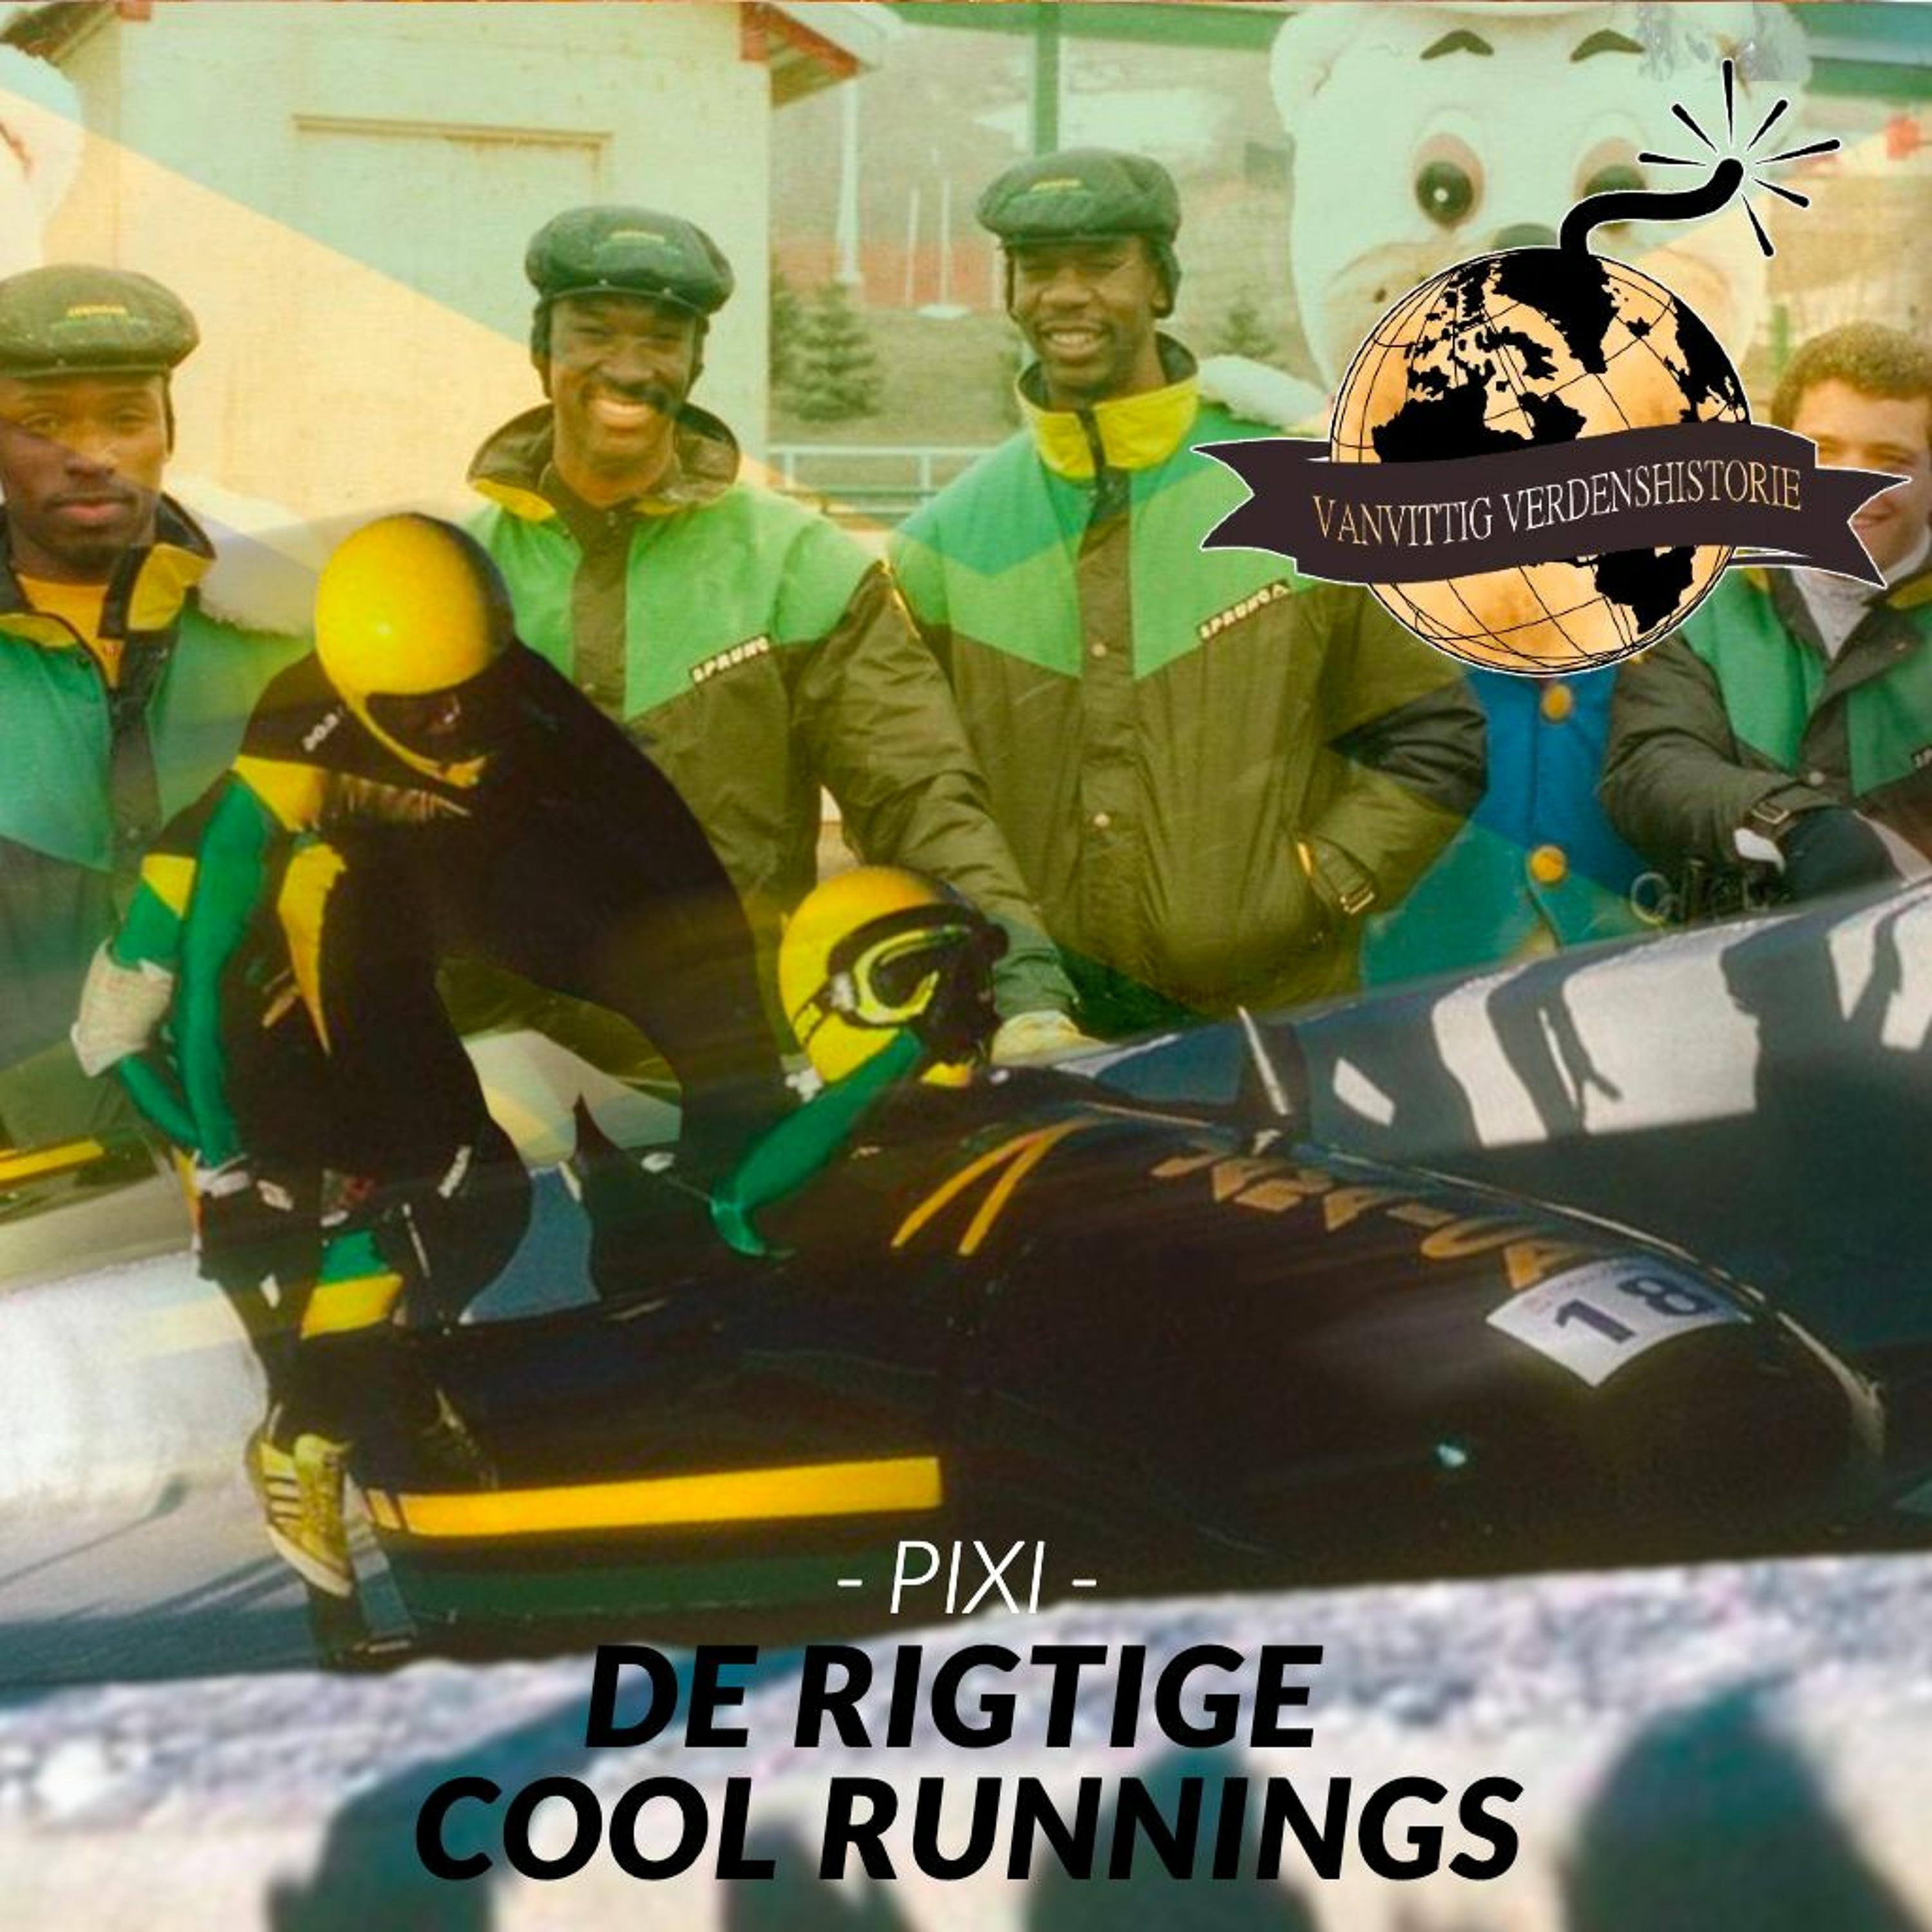 PIXI: De rigtige Cool Runnings